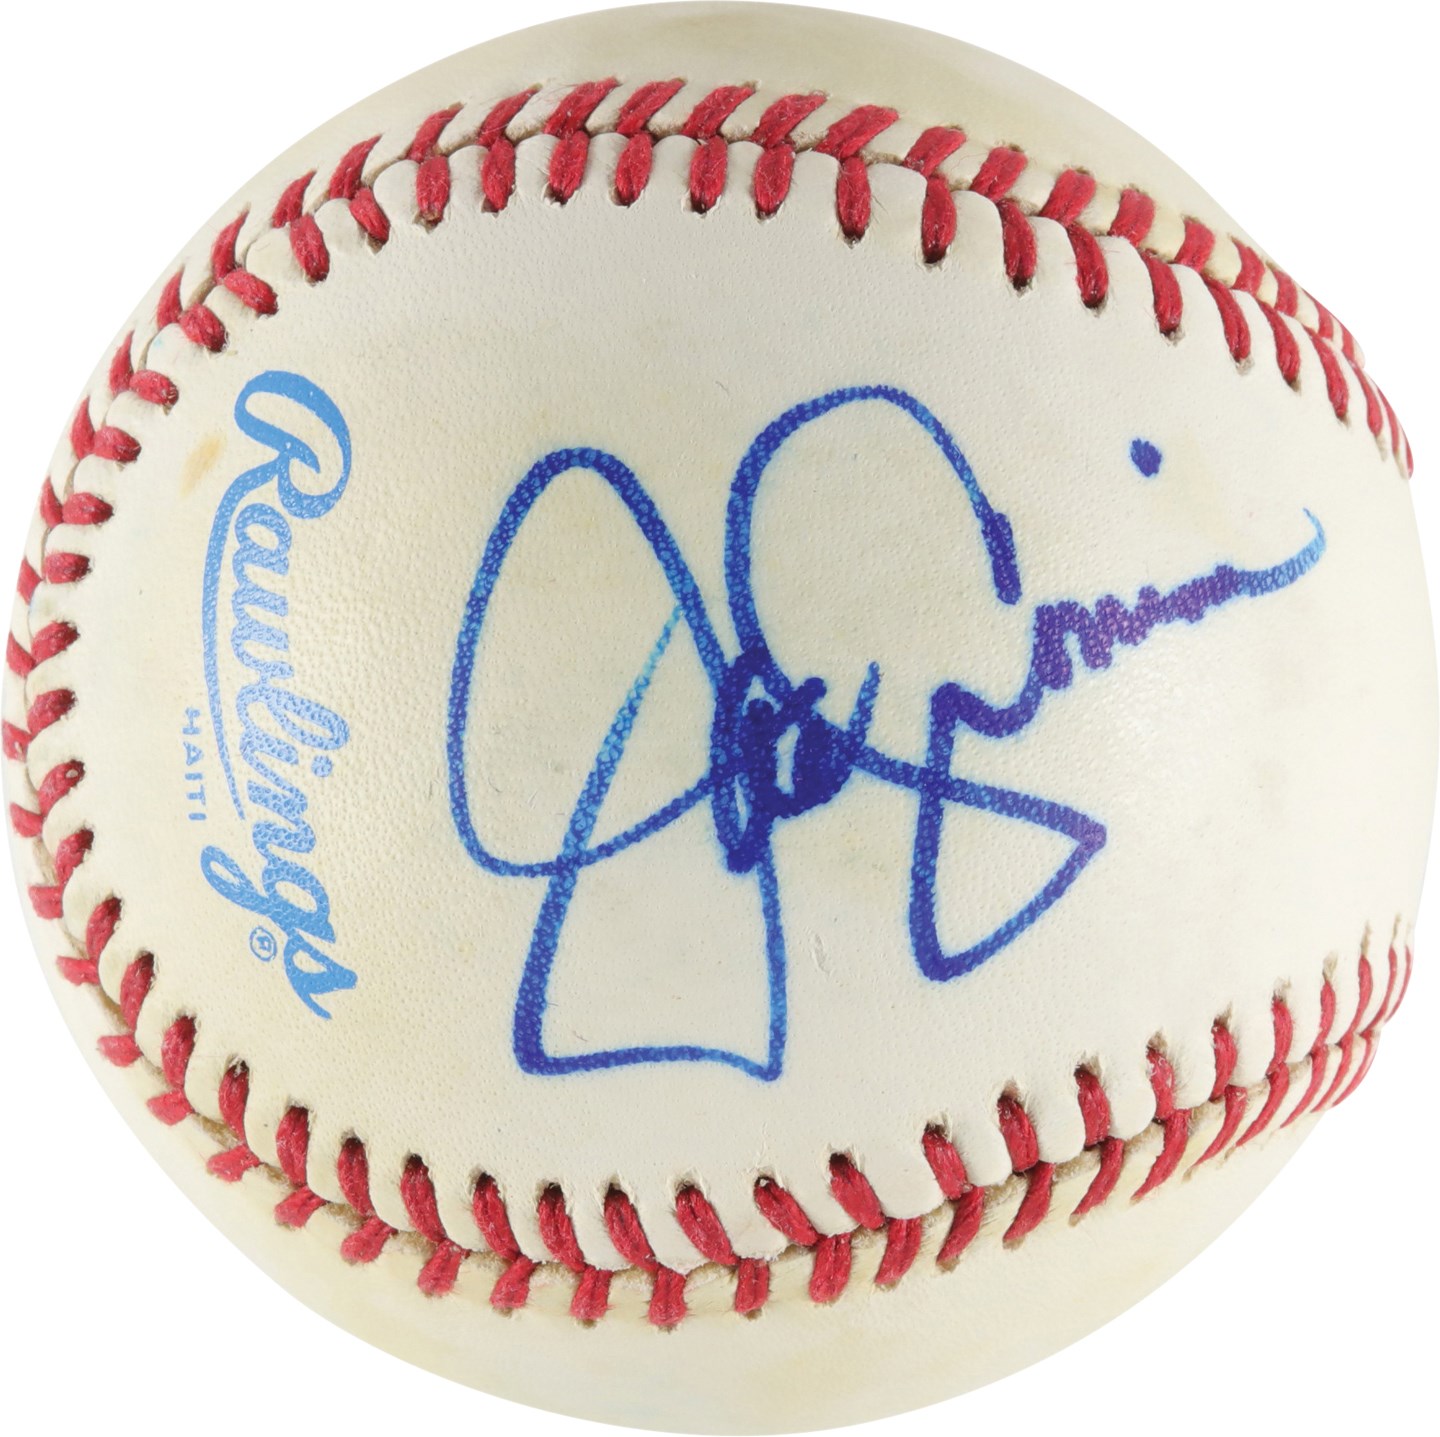 - Joe Cronin Single-Signed Baseball (PSA)